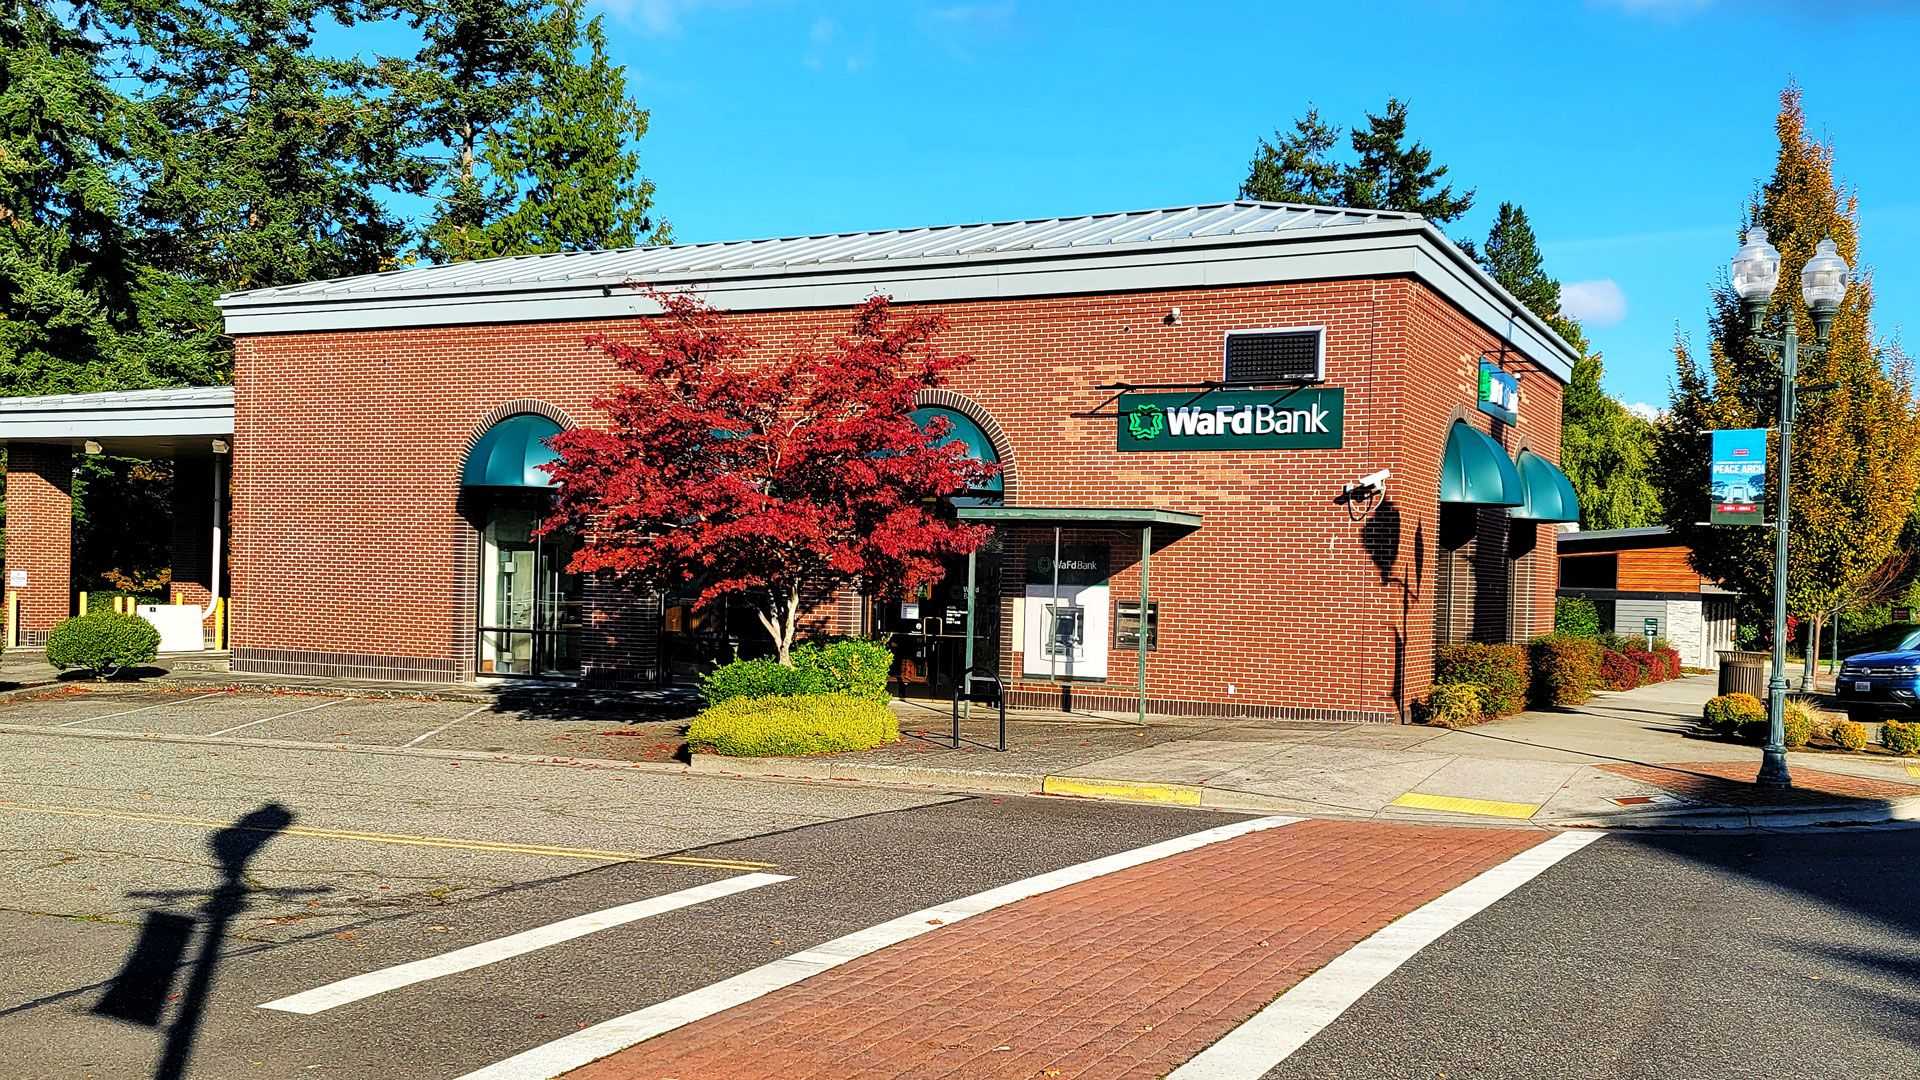 WaFd Bank in Blaine, Washington #1235 - Washington Federal.